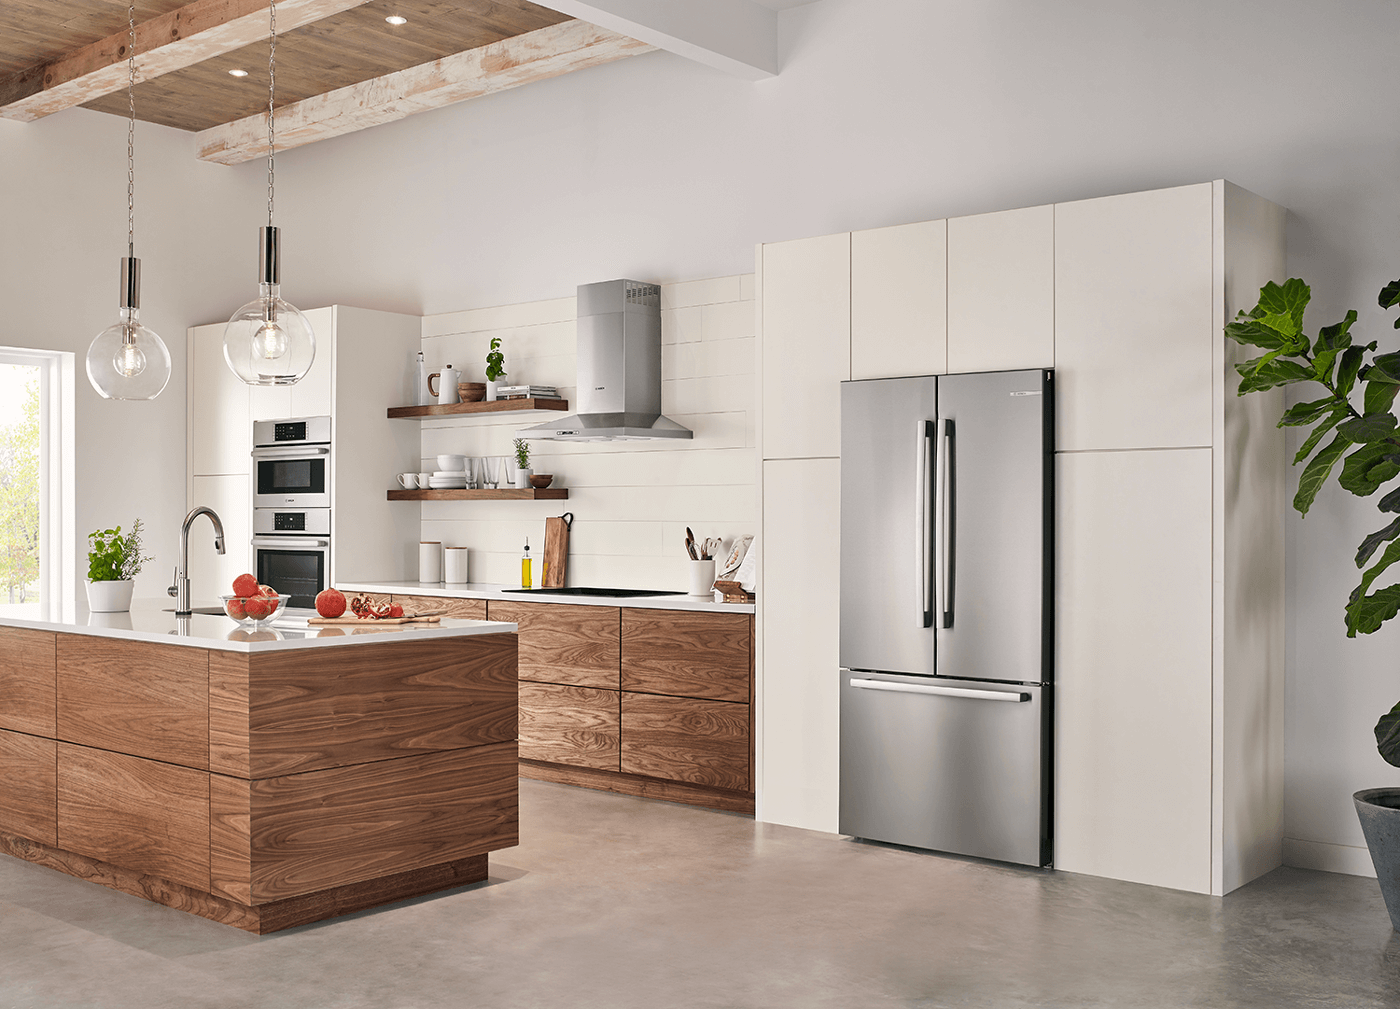 double door fridge kitchen design